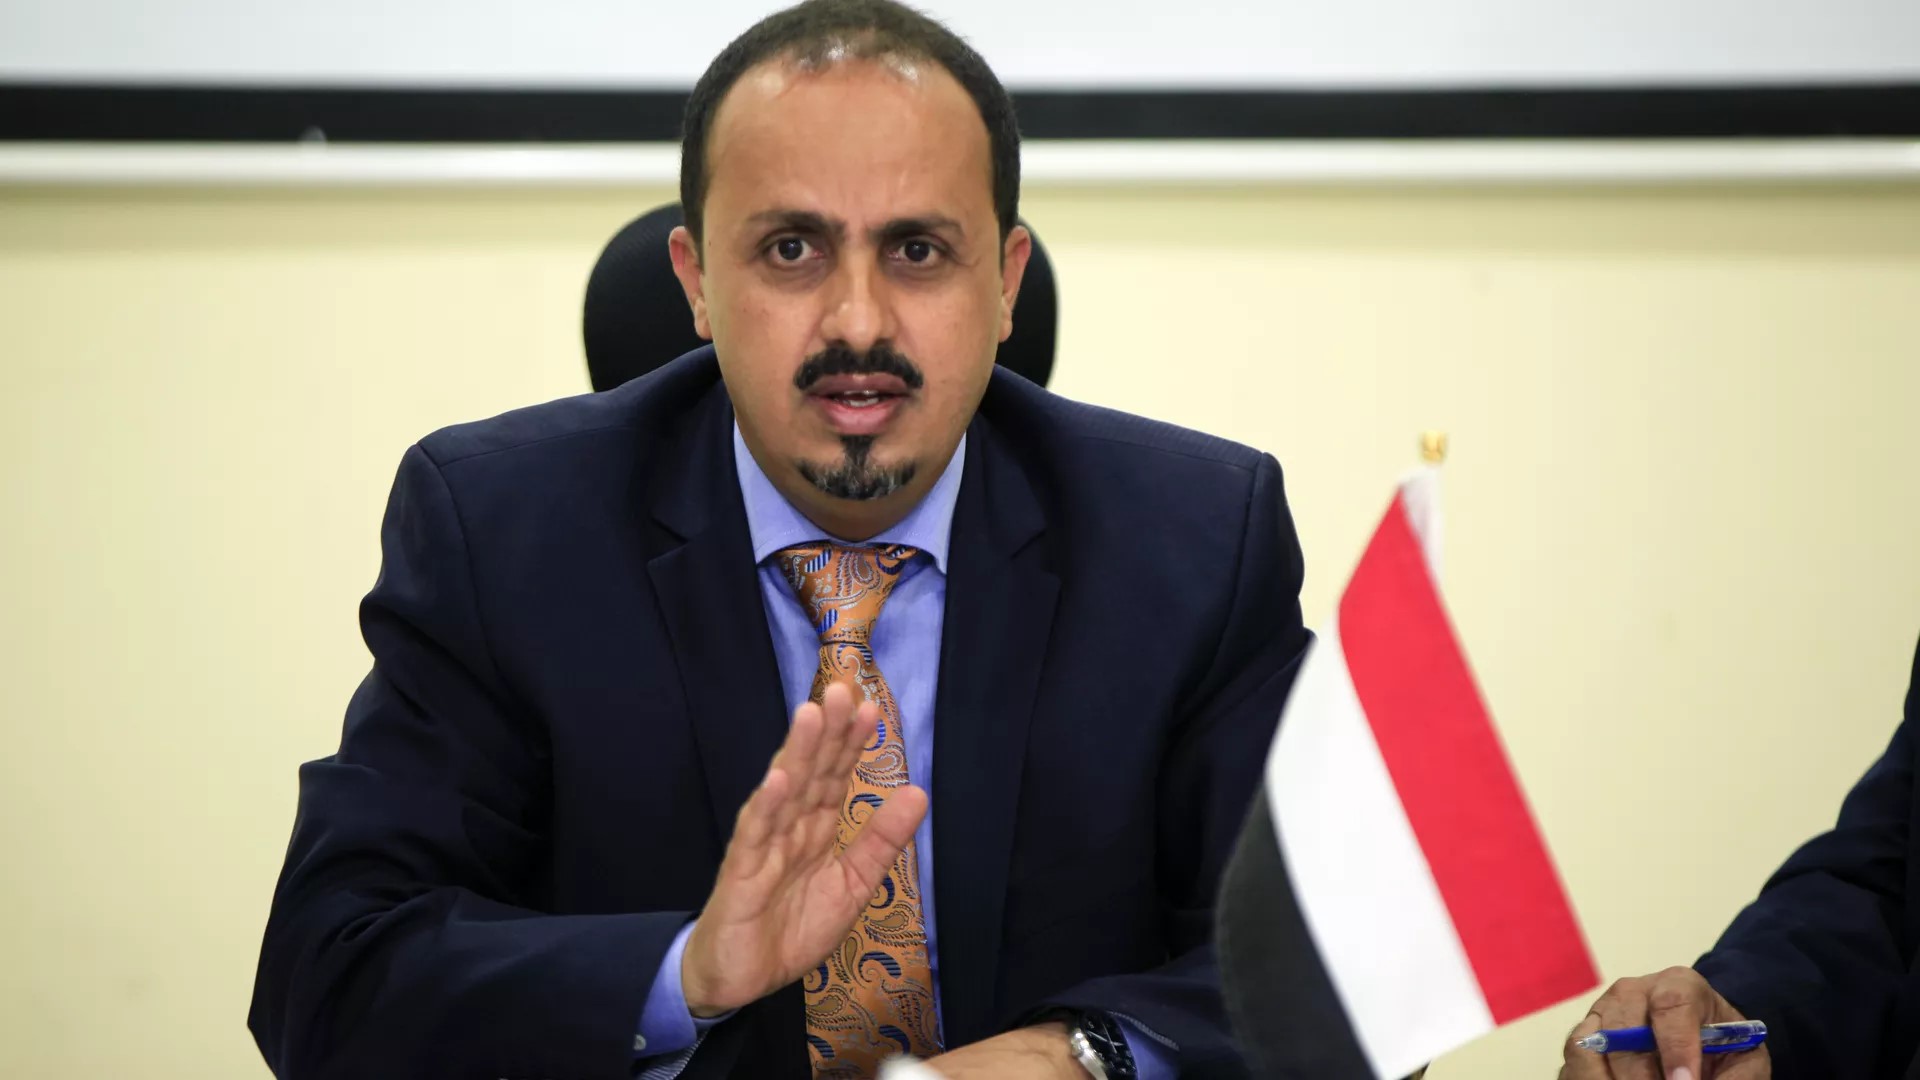 وزير الإعلام اليمني يحمل "أنصار الله" مسؤولية وفاة 18 طفلا بأدوية لعلاج السرطان منتهية الصلاحية